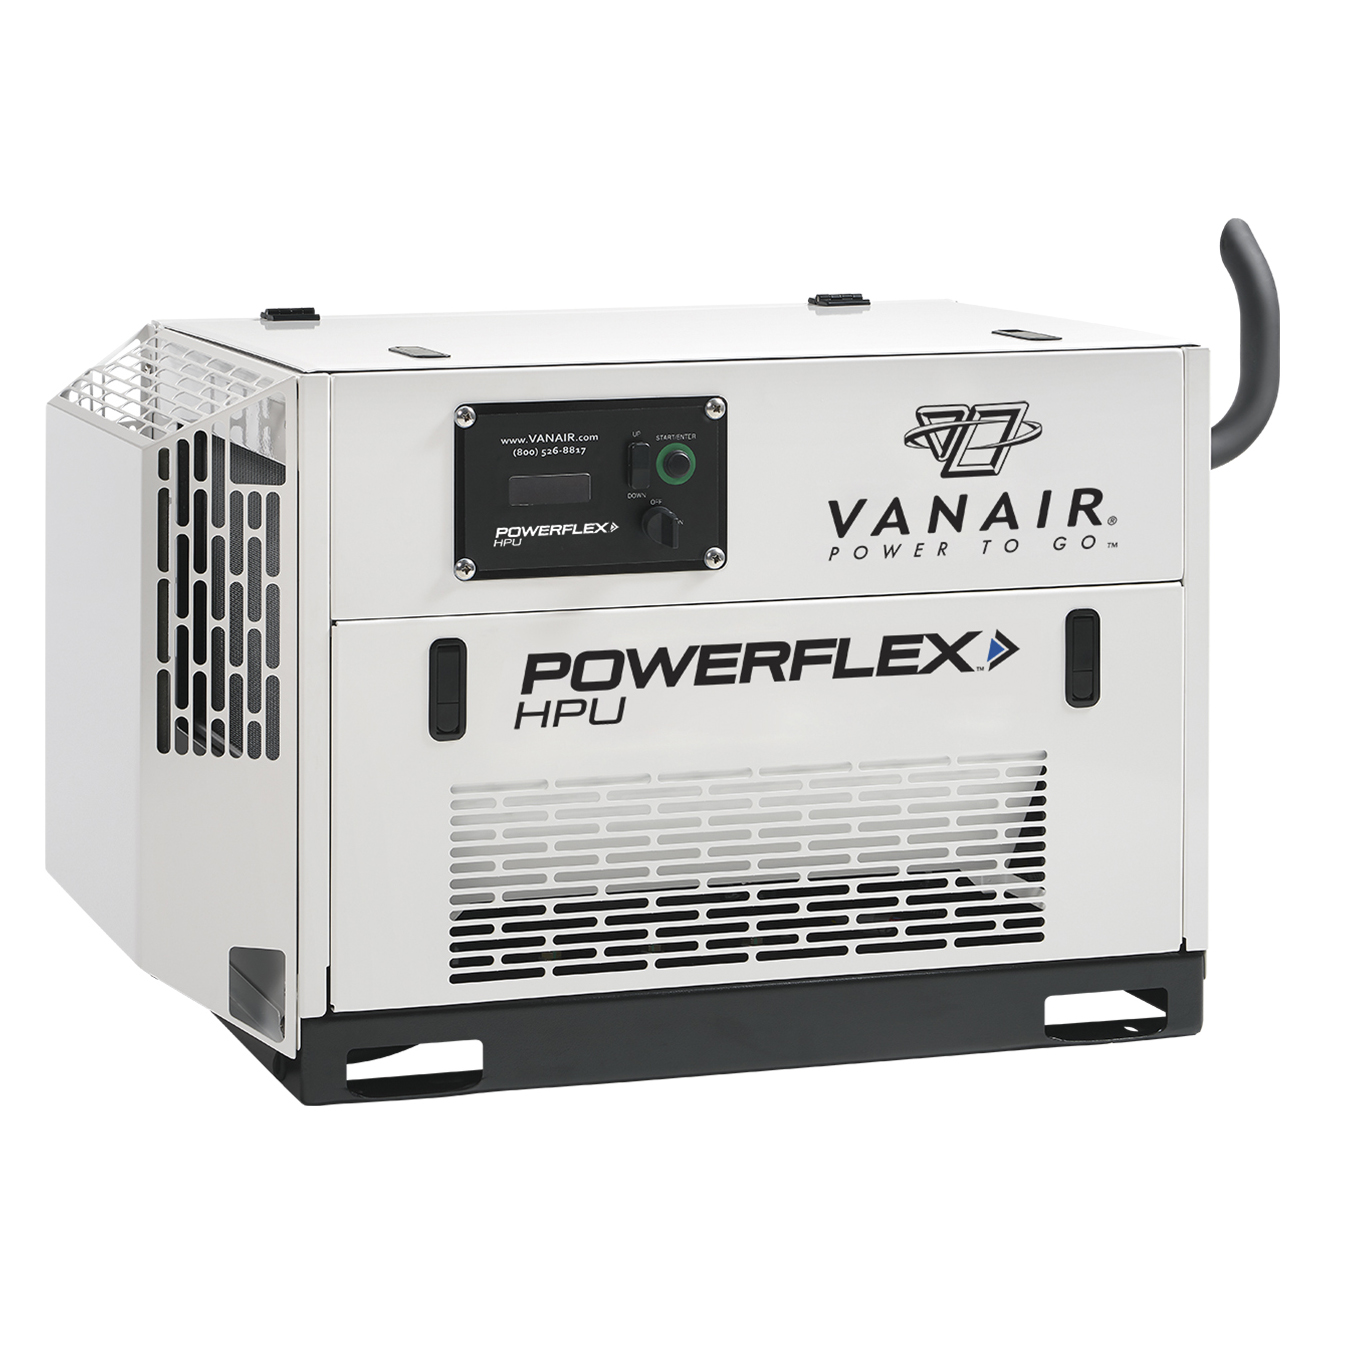 Vanair PowerFlex HPU